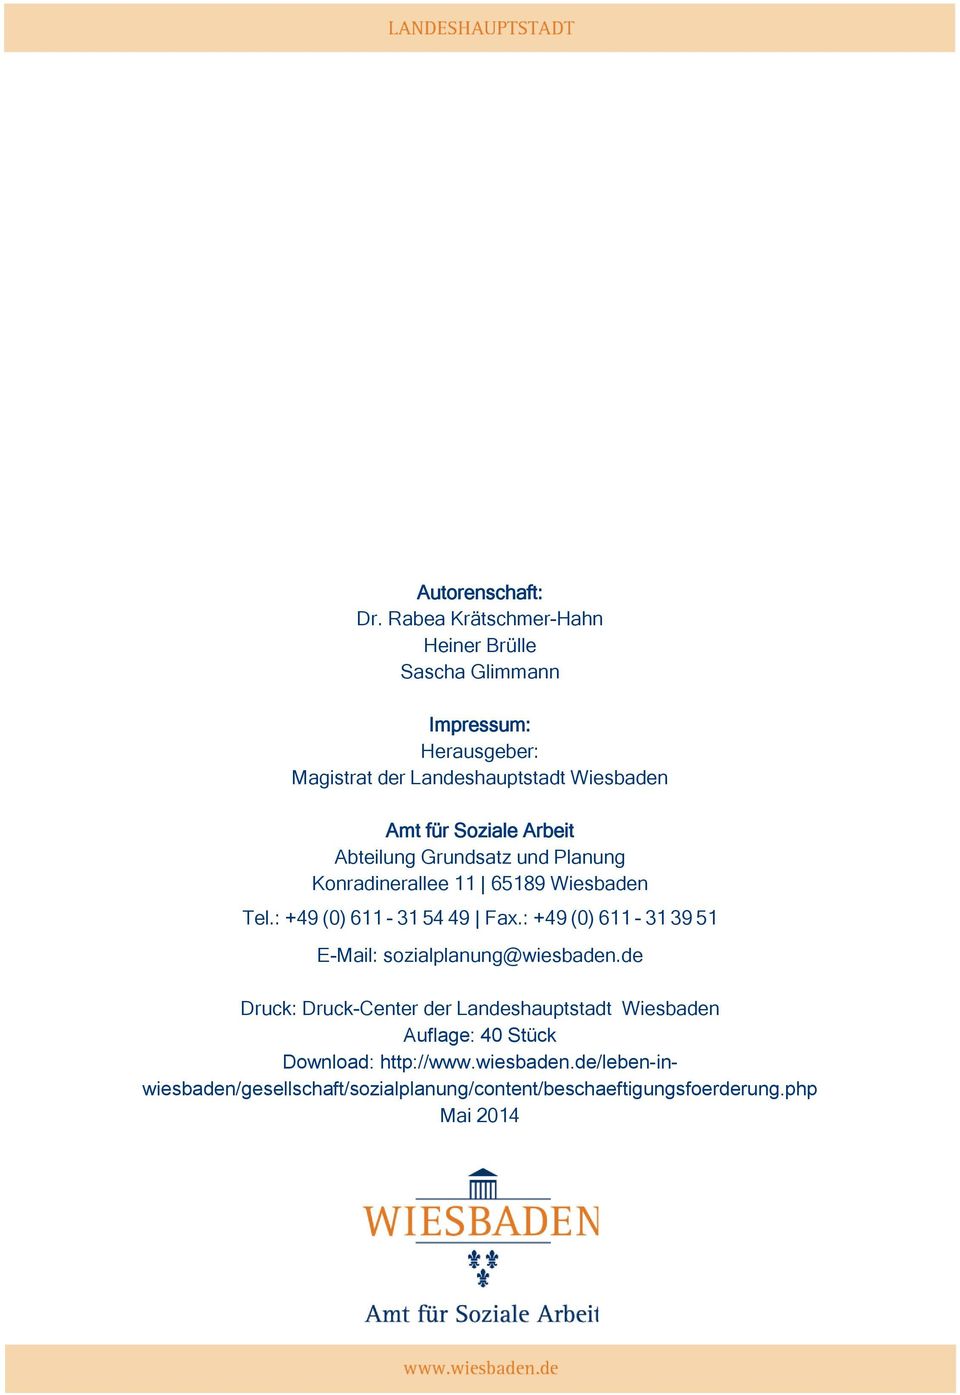 Soziale Arbeit Abteilung Grundsatz und Planung Konradinerallee 11 65189 Wiesbaden Tel.: +49 (0) 611-31 54 49 Fax.